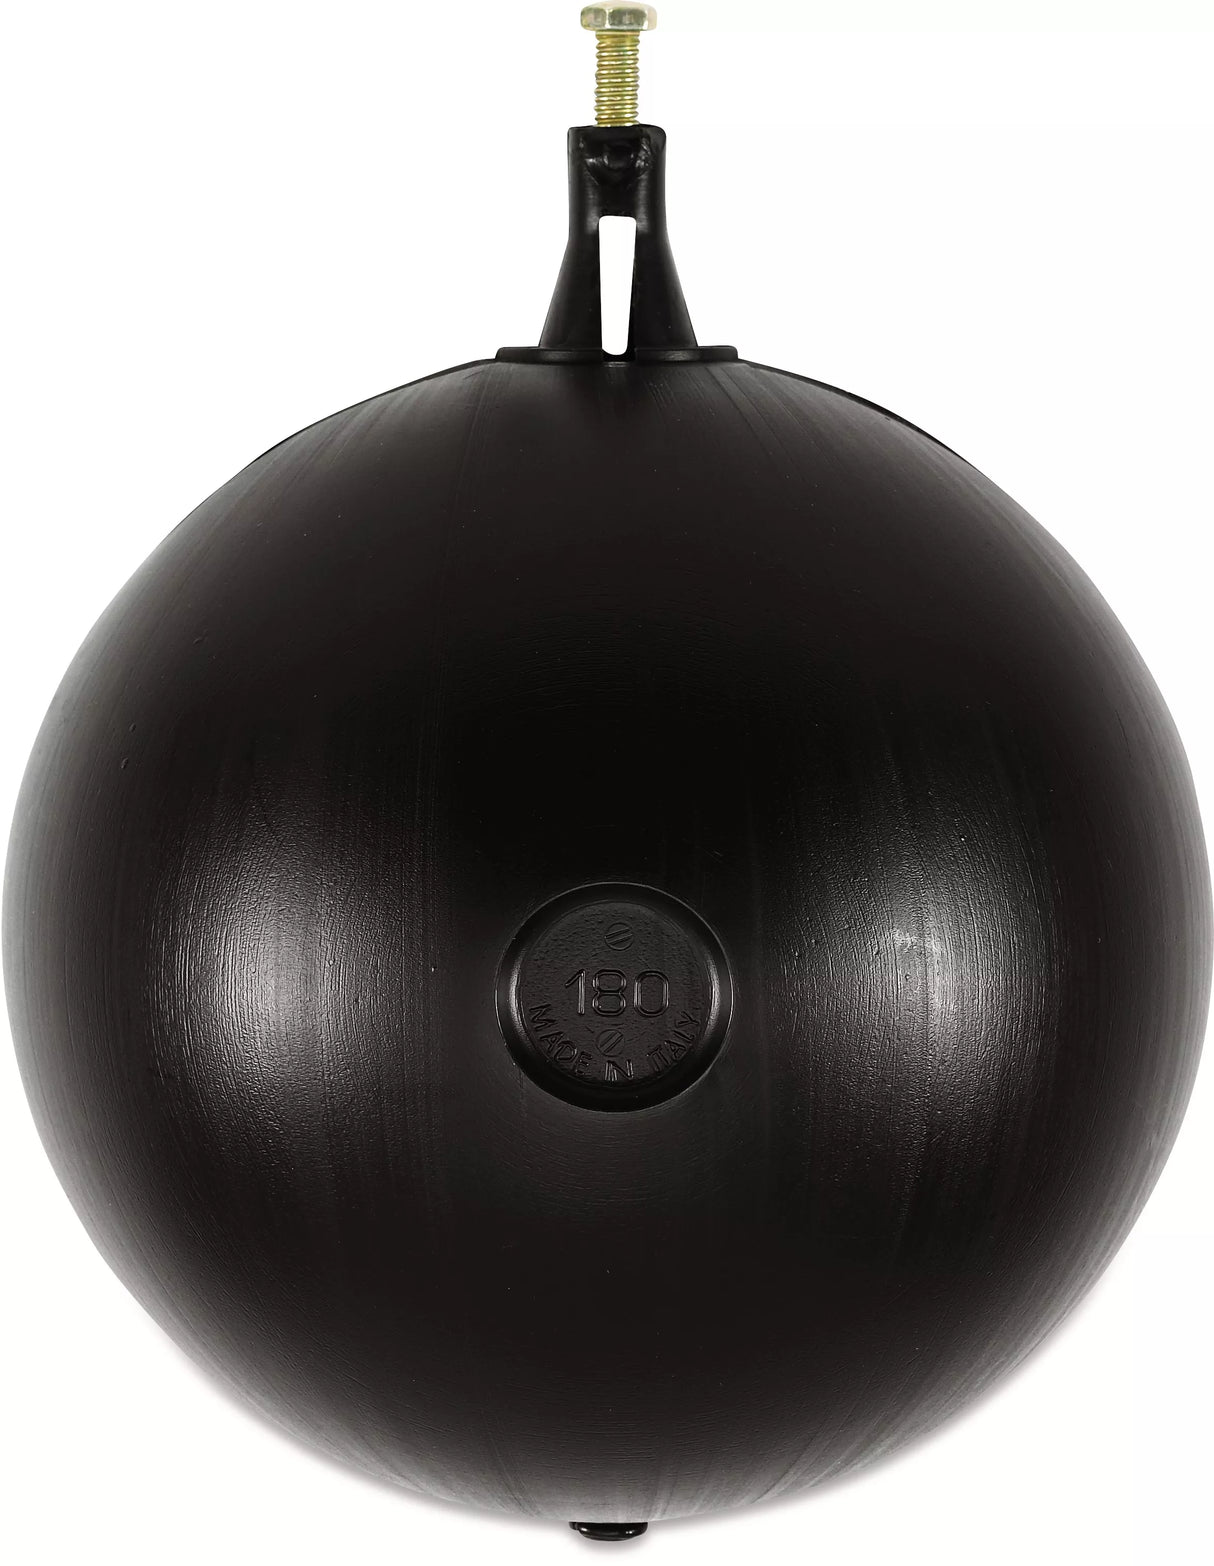 PV Float Ball for Brass Float Operation Valve - 150mm Diameter 1", 1¼" & 1½" Valve